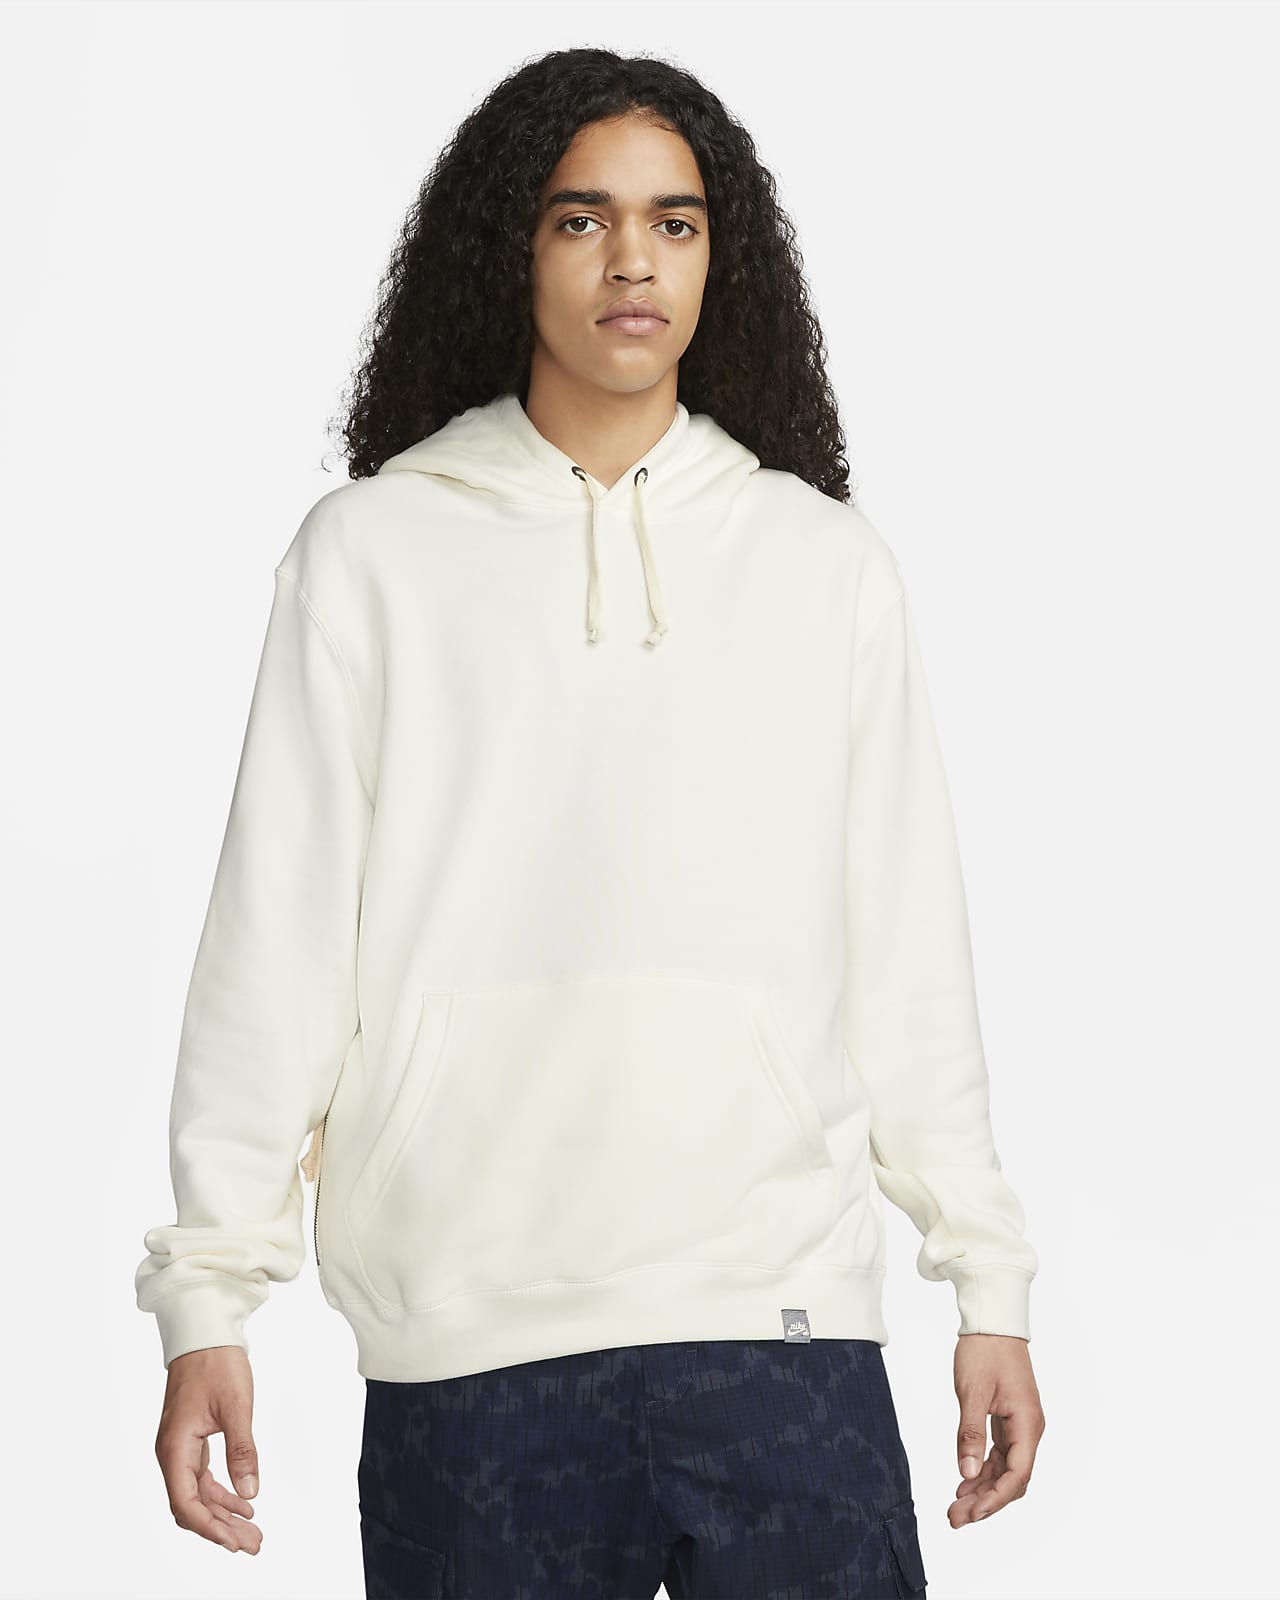 Μπλούζα με κουκούλα κορυφαίας ποιότητας για skateboarding Nike SB